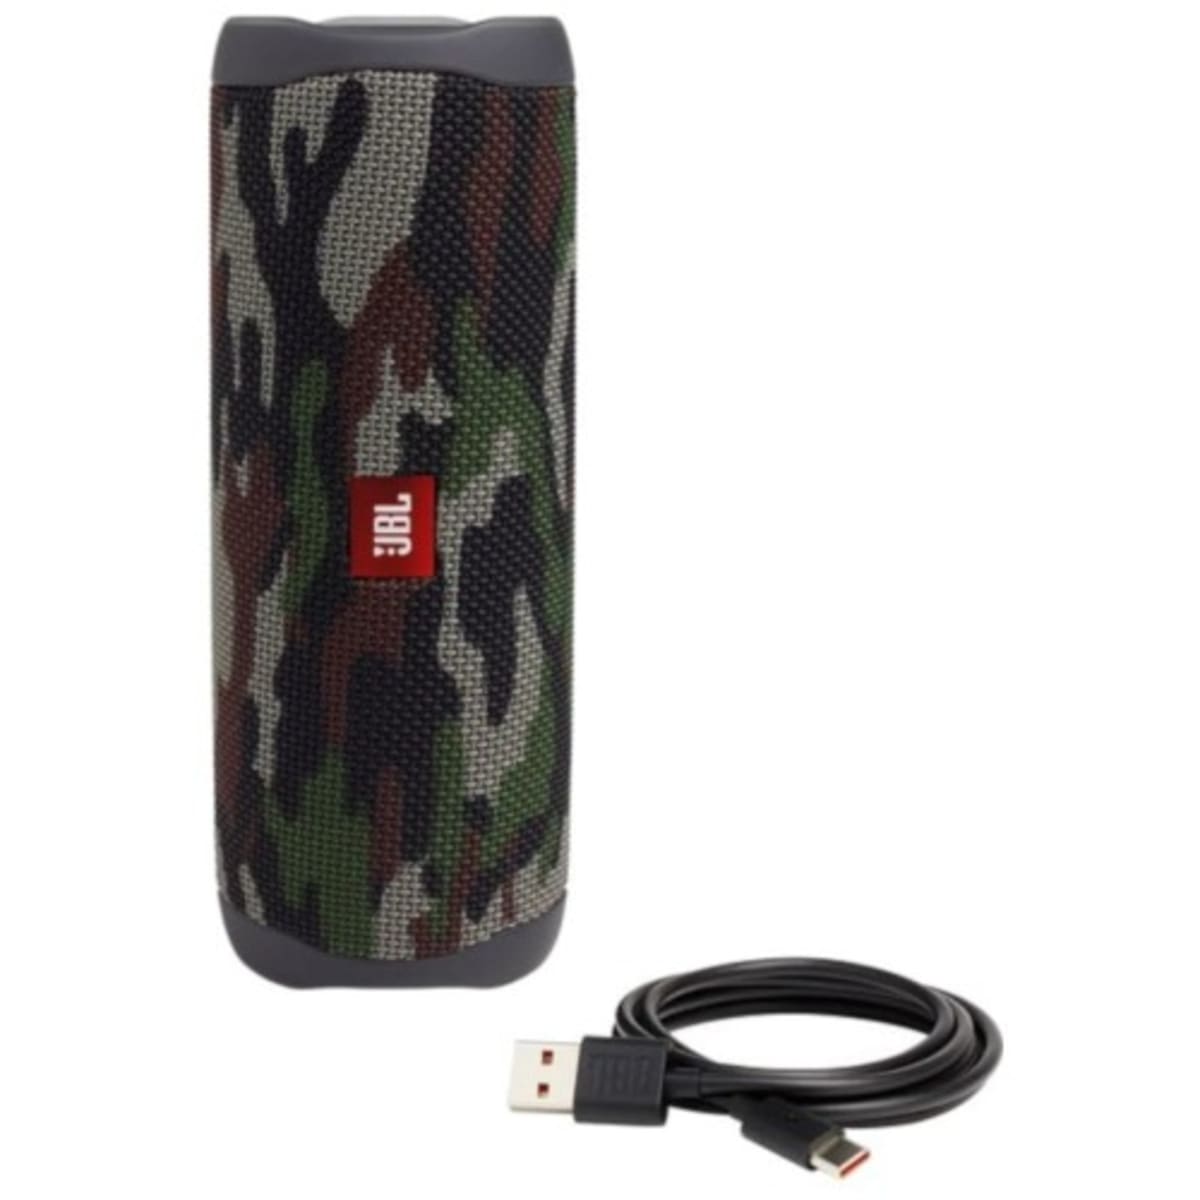 JBL Flip 4 Waterproof Portable Bluetooth Speaker - Camo 